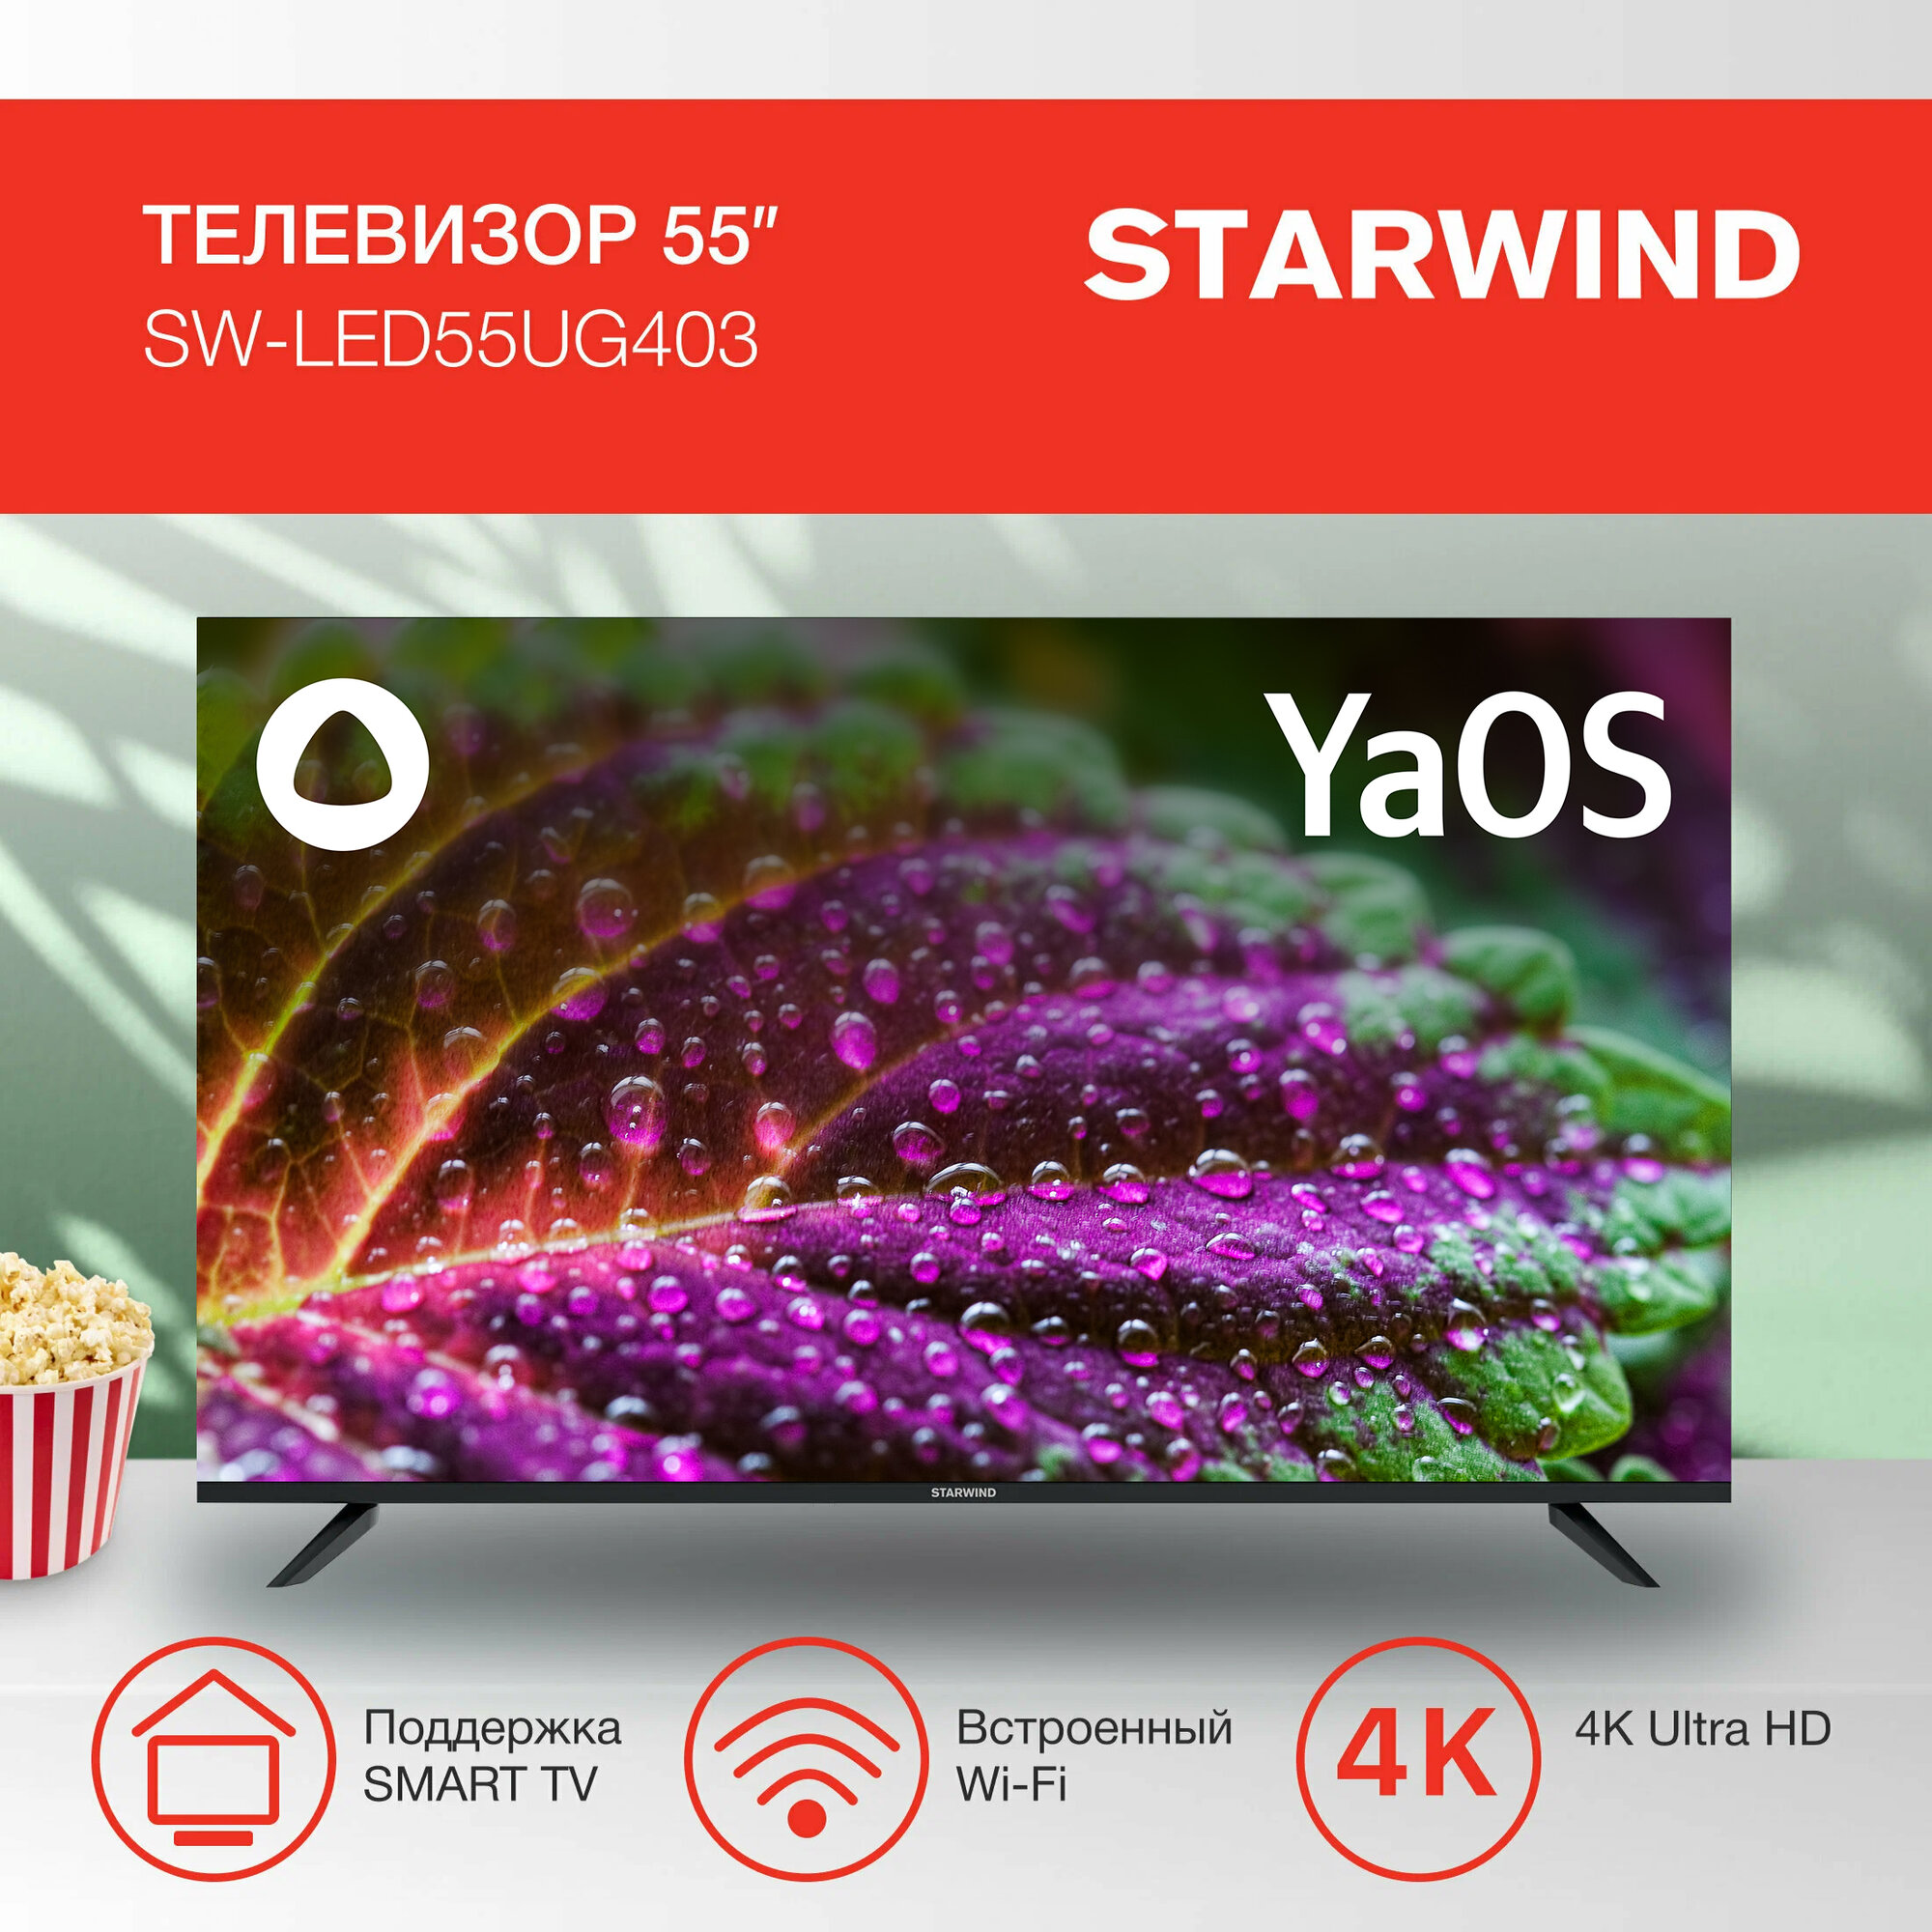 Телевизор Starwind Яндекс.ТВ SW-LED55UG403, 55", LED, 4K Ultra HD, Яндекс.ТВ, черный - фото №2